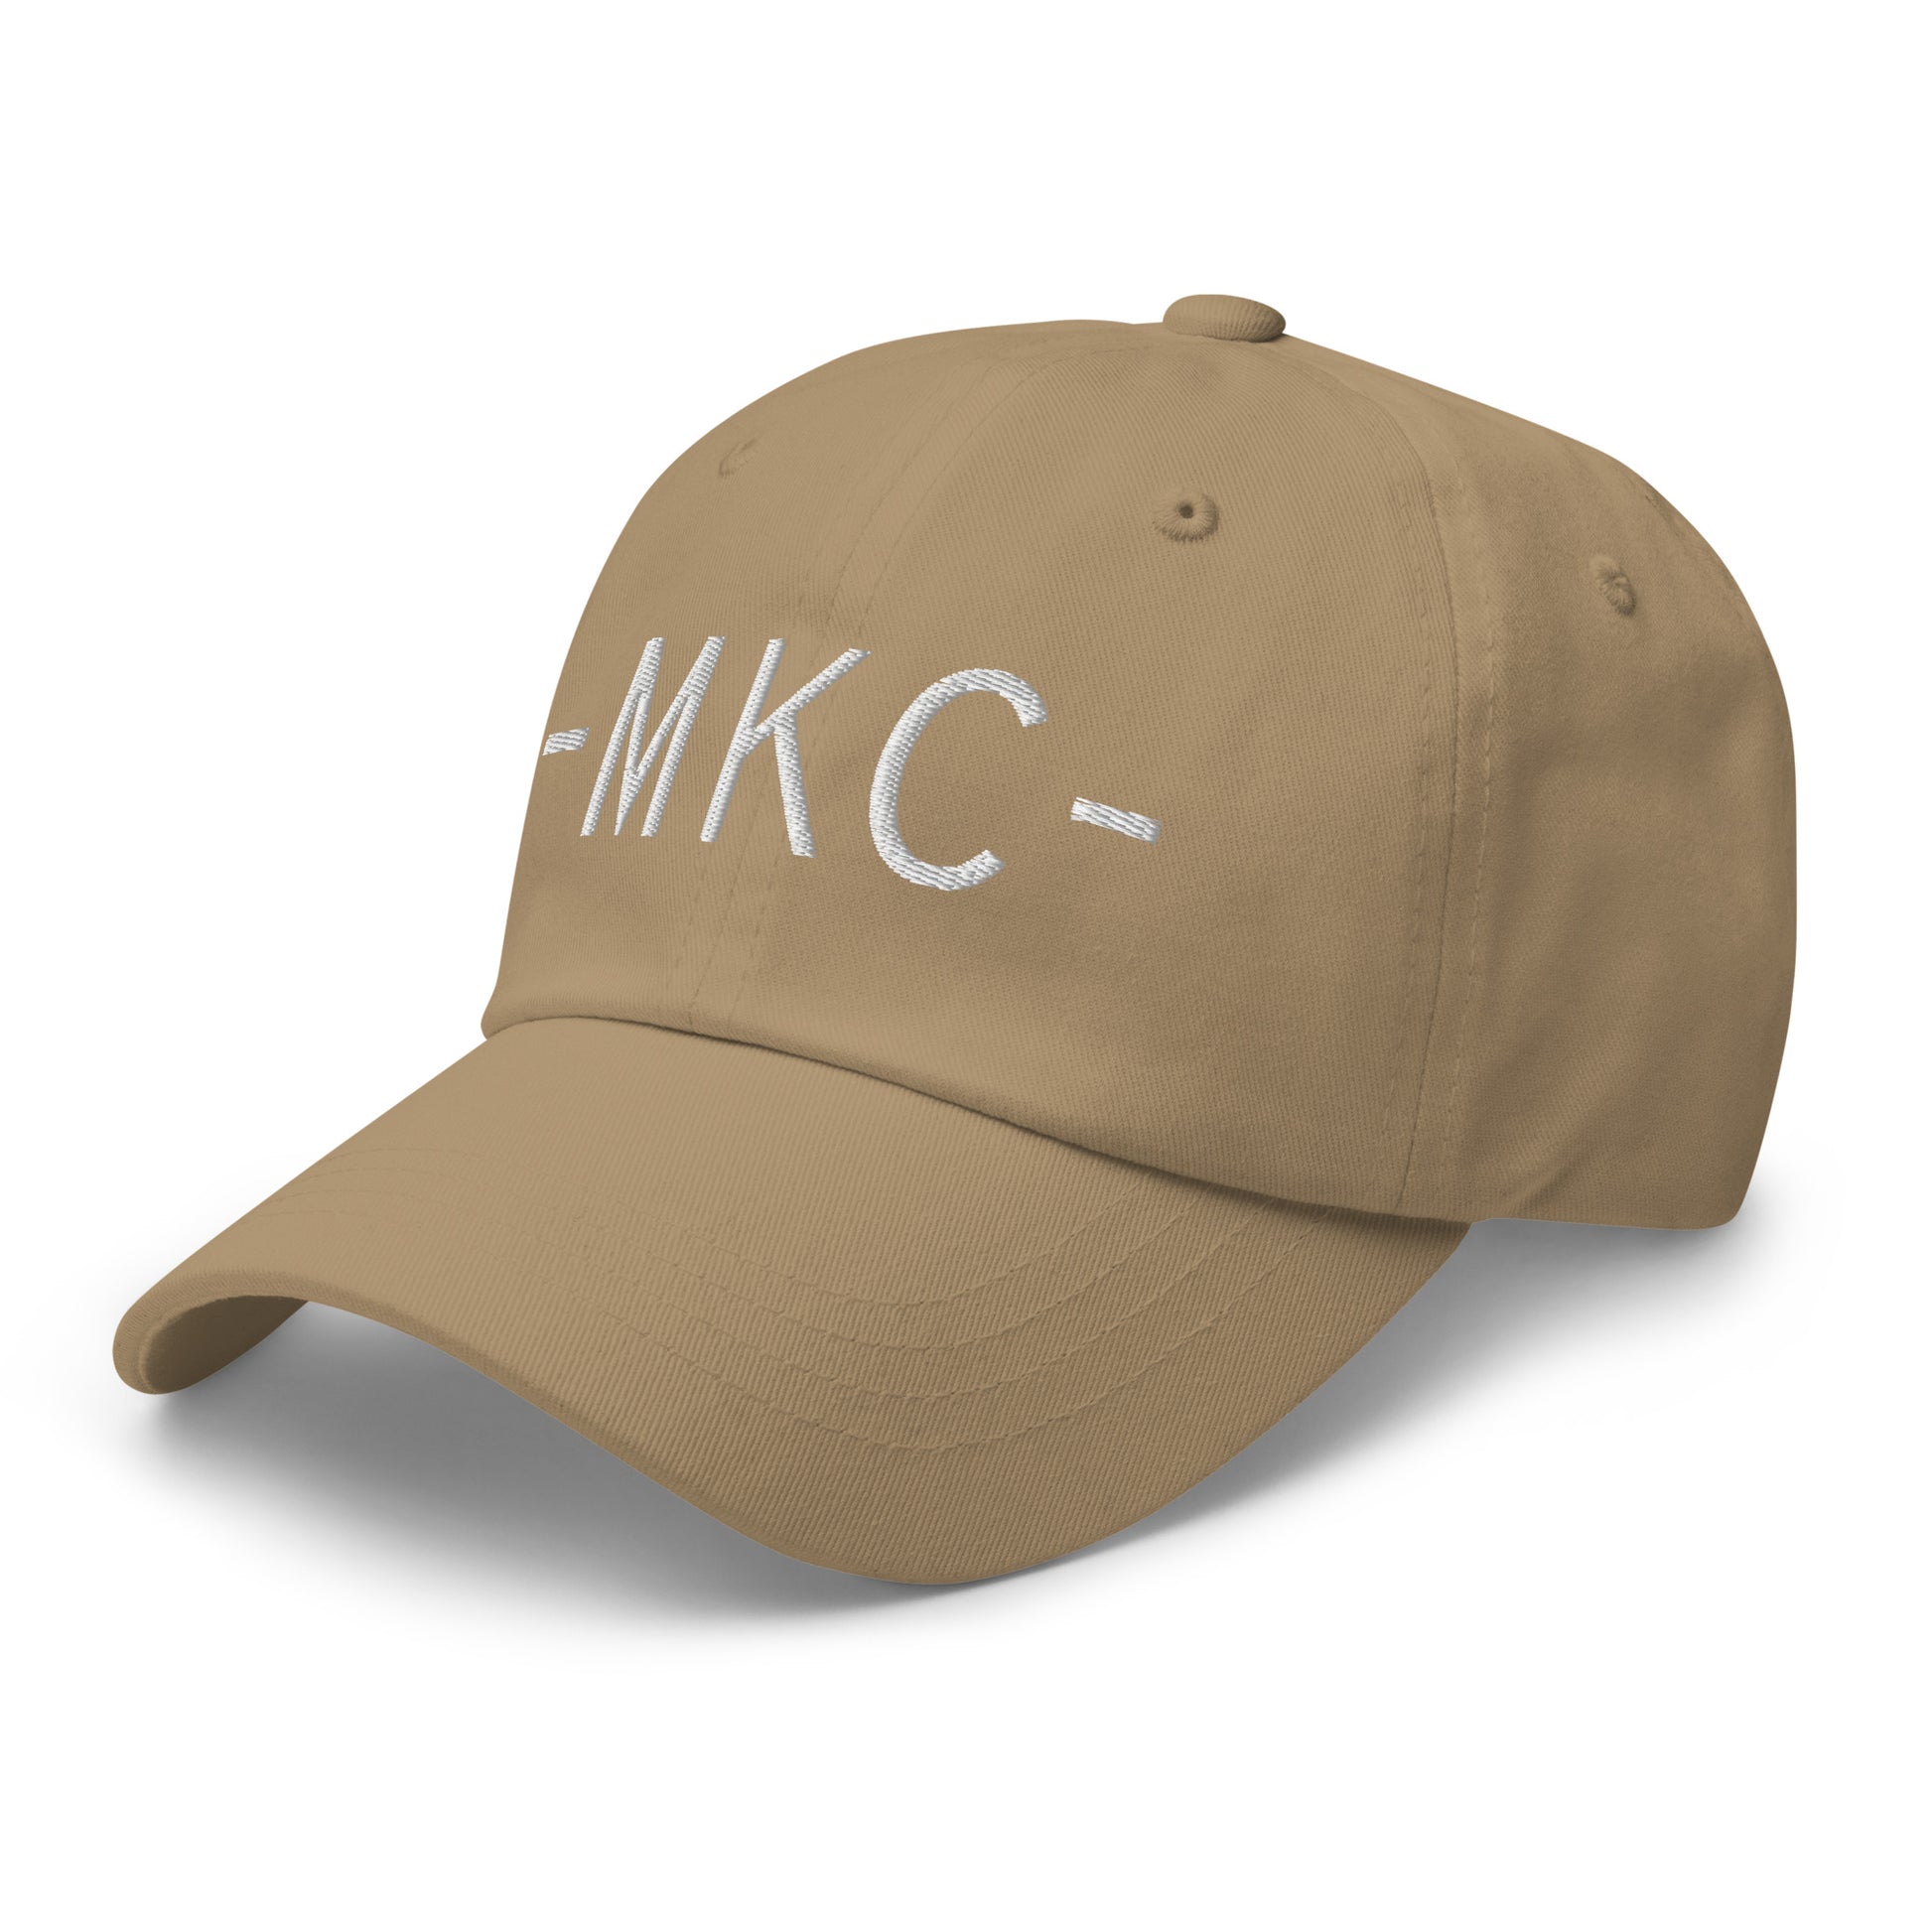 Souvenir Baseball Cap - White • MKC Kansas City • YHM Designs - Image 22